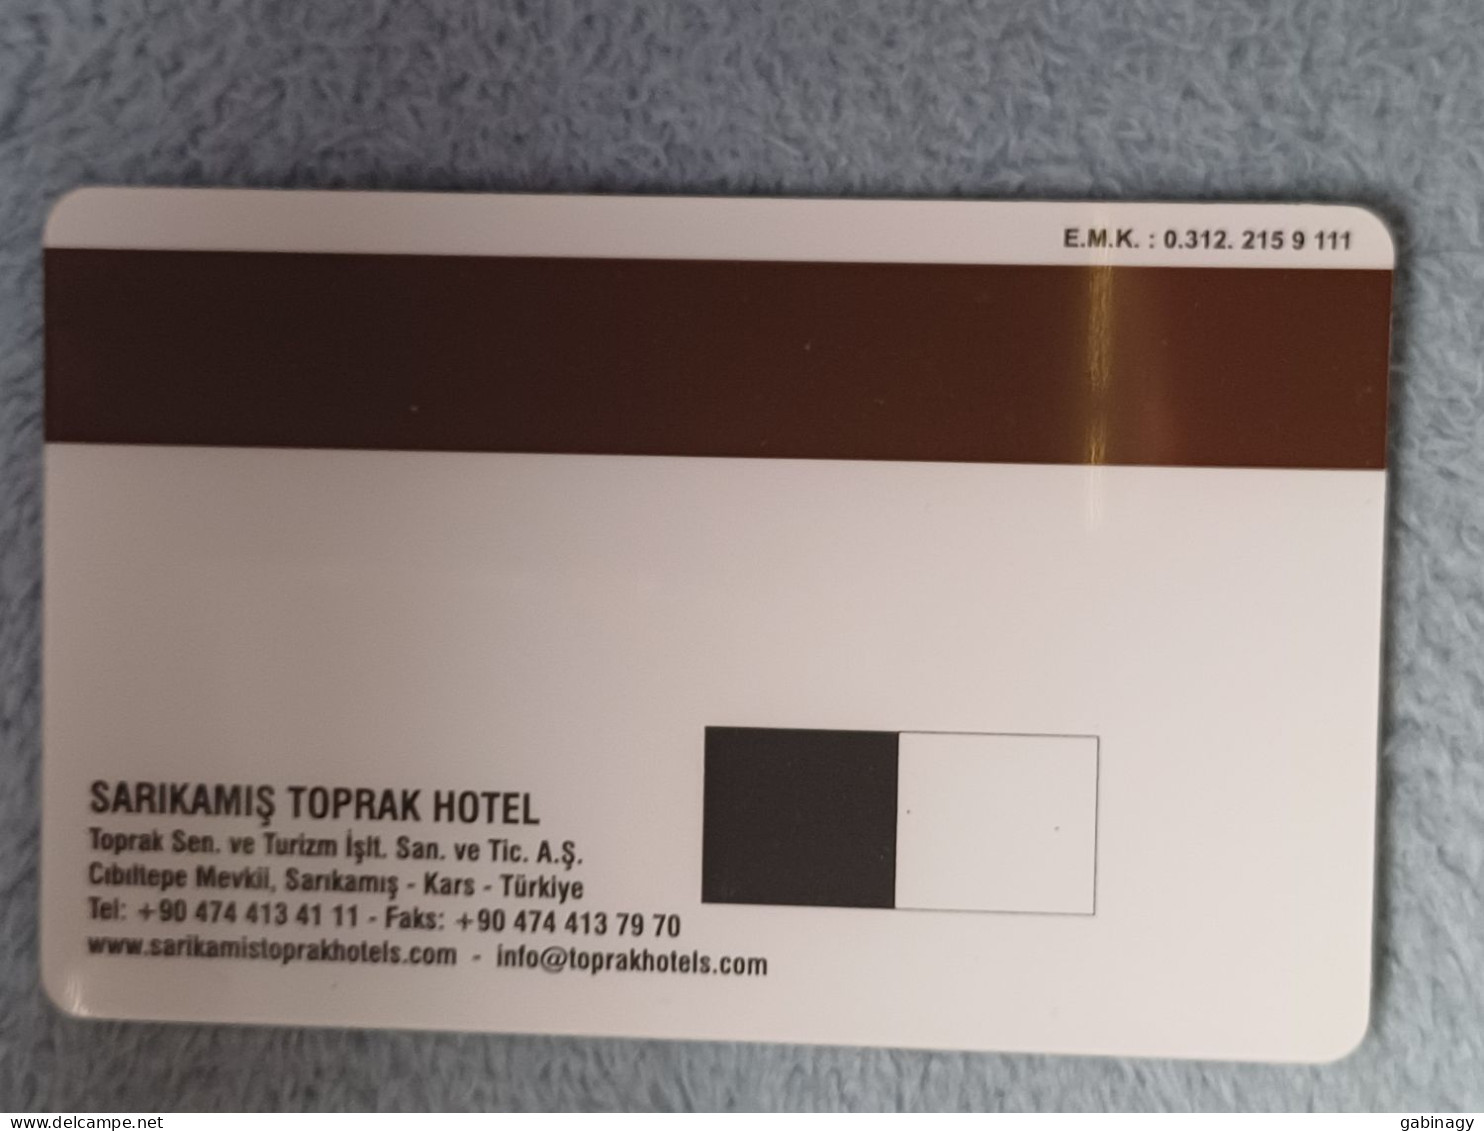 HOTEL KEYS - 2553 - TURKEY - TOPRAK HOTEL - Hotel Keycards